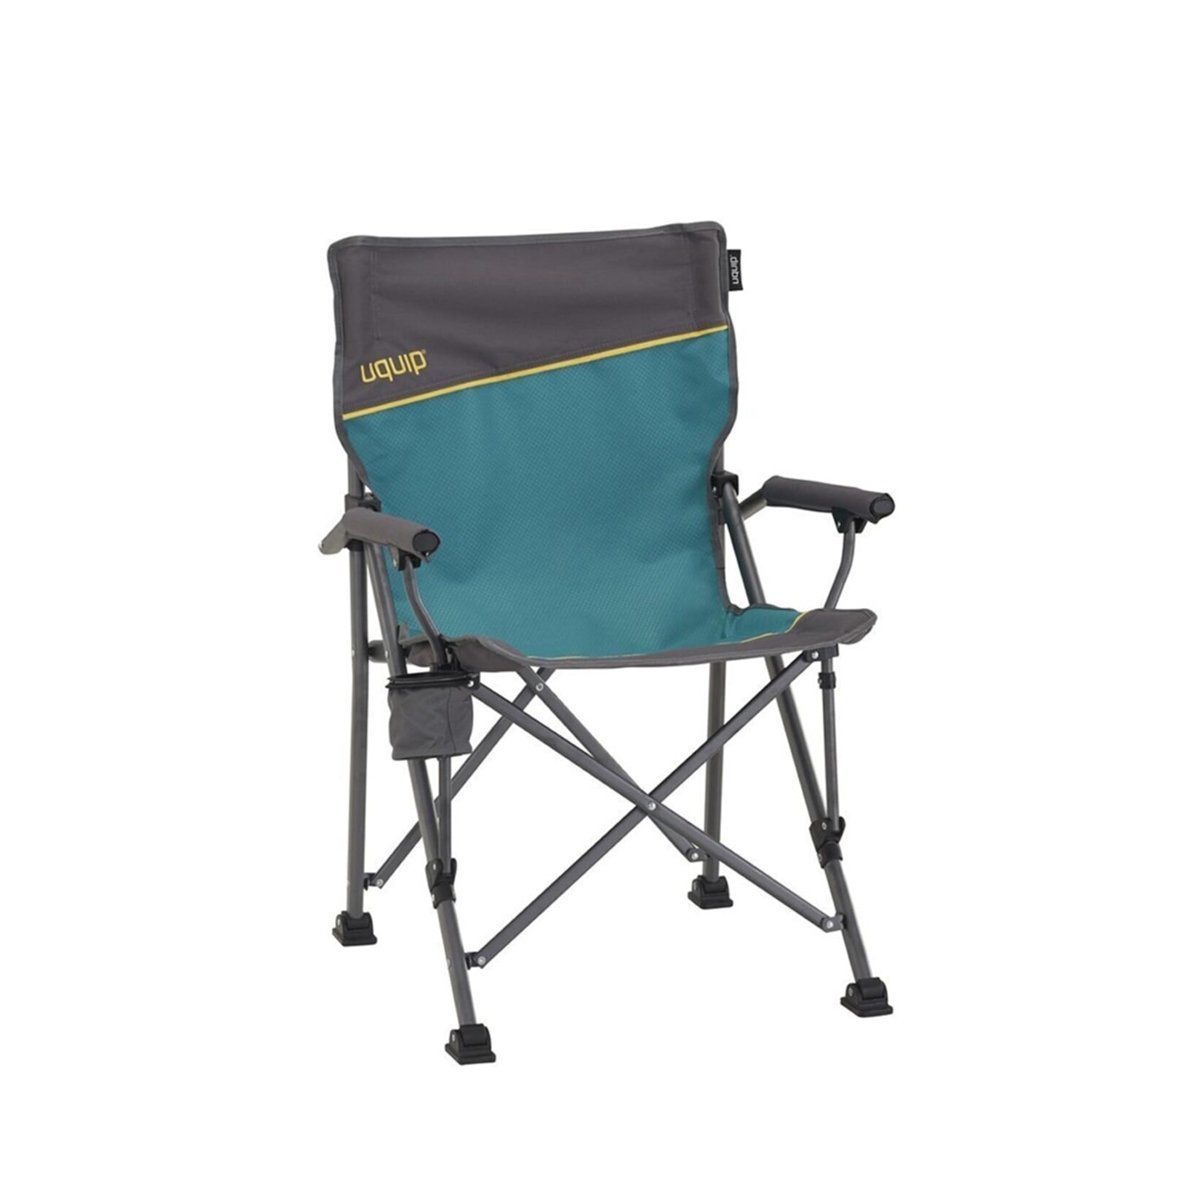 Uquip Uquıp Roxy Yüksek Konforlu & Takviyeli Katlanır Kamp Sandalyesi Sandalye - Renkli - 1